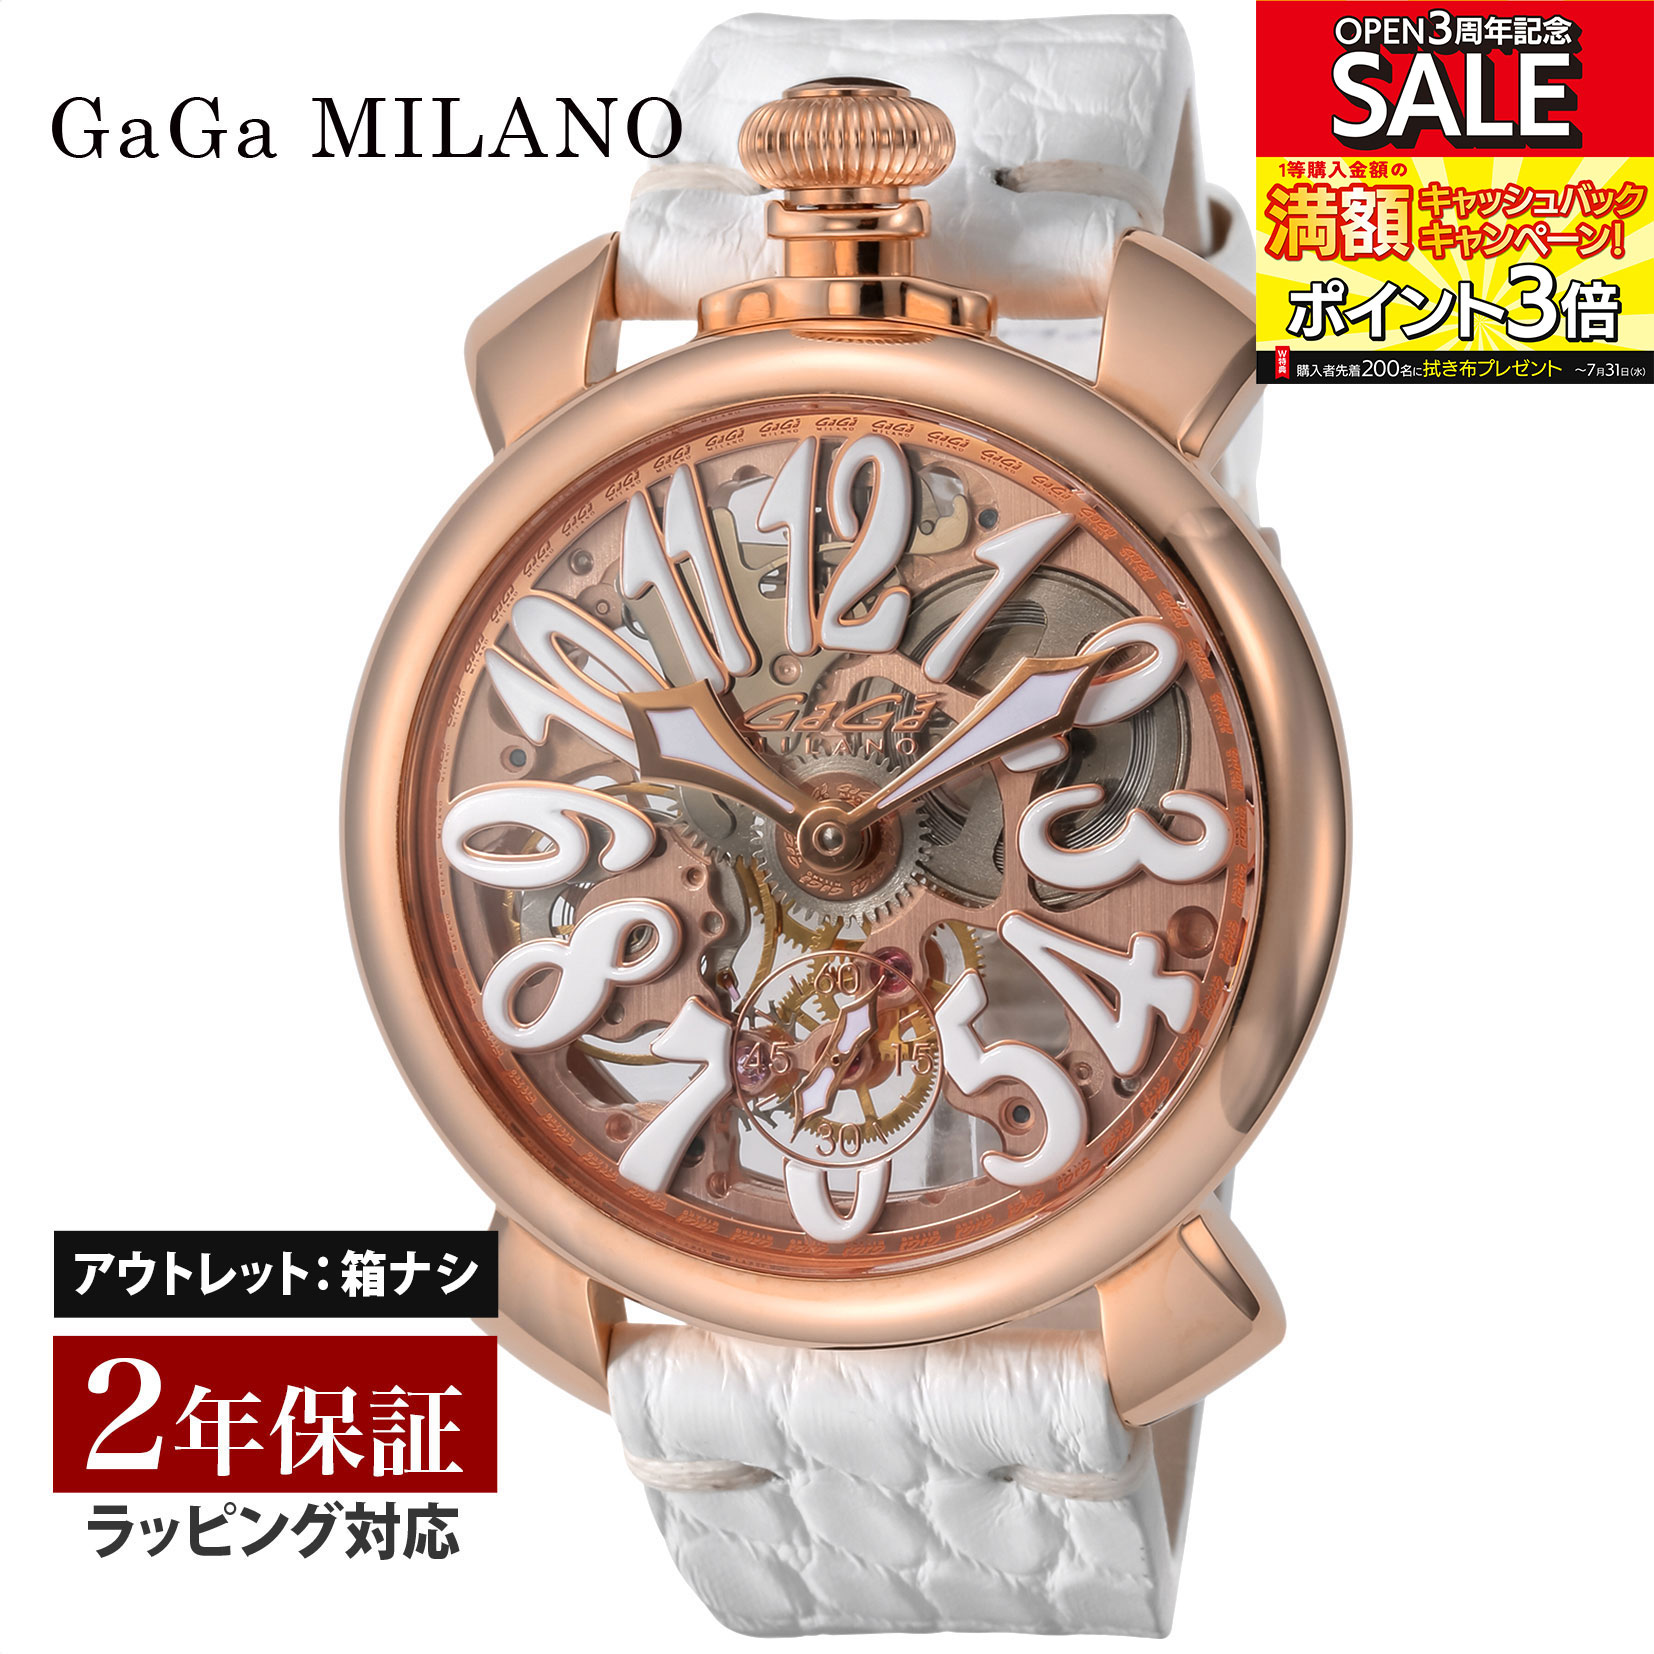 【クリアランスSALE】 GaGaMILAN ガガミラノ MANUALE 48MM 手巻き メンズ スケルトン 5311.01-S   腕時計 高級腕時計 ブランド 